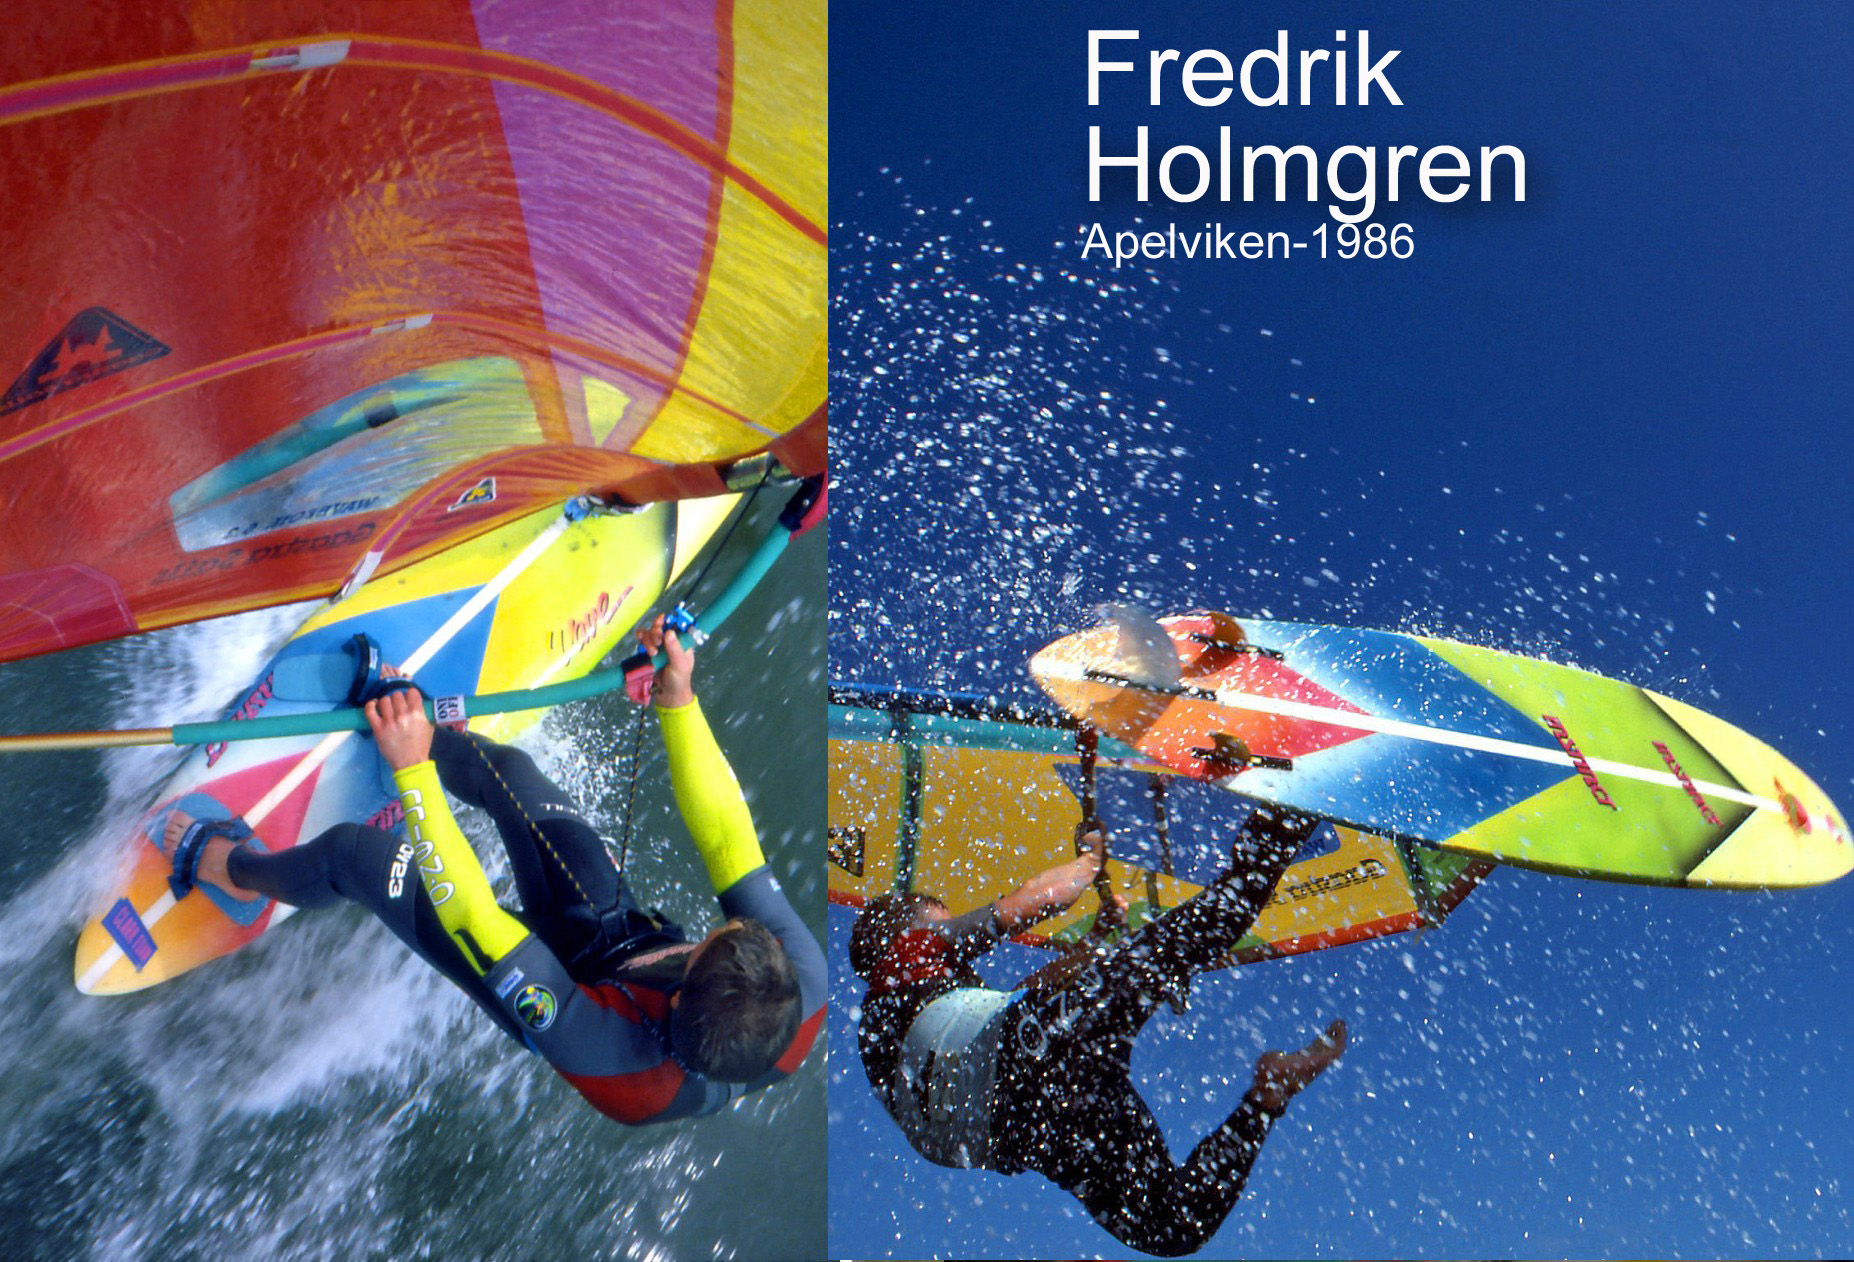 Fredrik+Holmgren+var+en+tidig+medlem+och+fotoobjekt+f%C3%B6r+Wave.+Nu+mer+skridsko%C3%A5kande+Link%C3%B6pingsbo